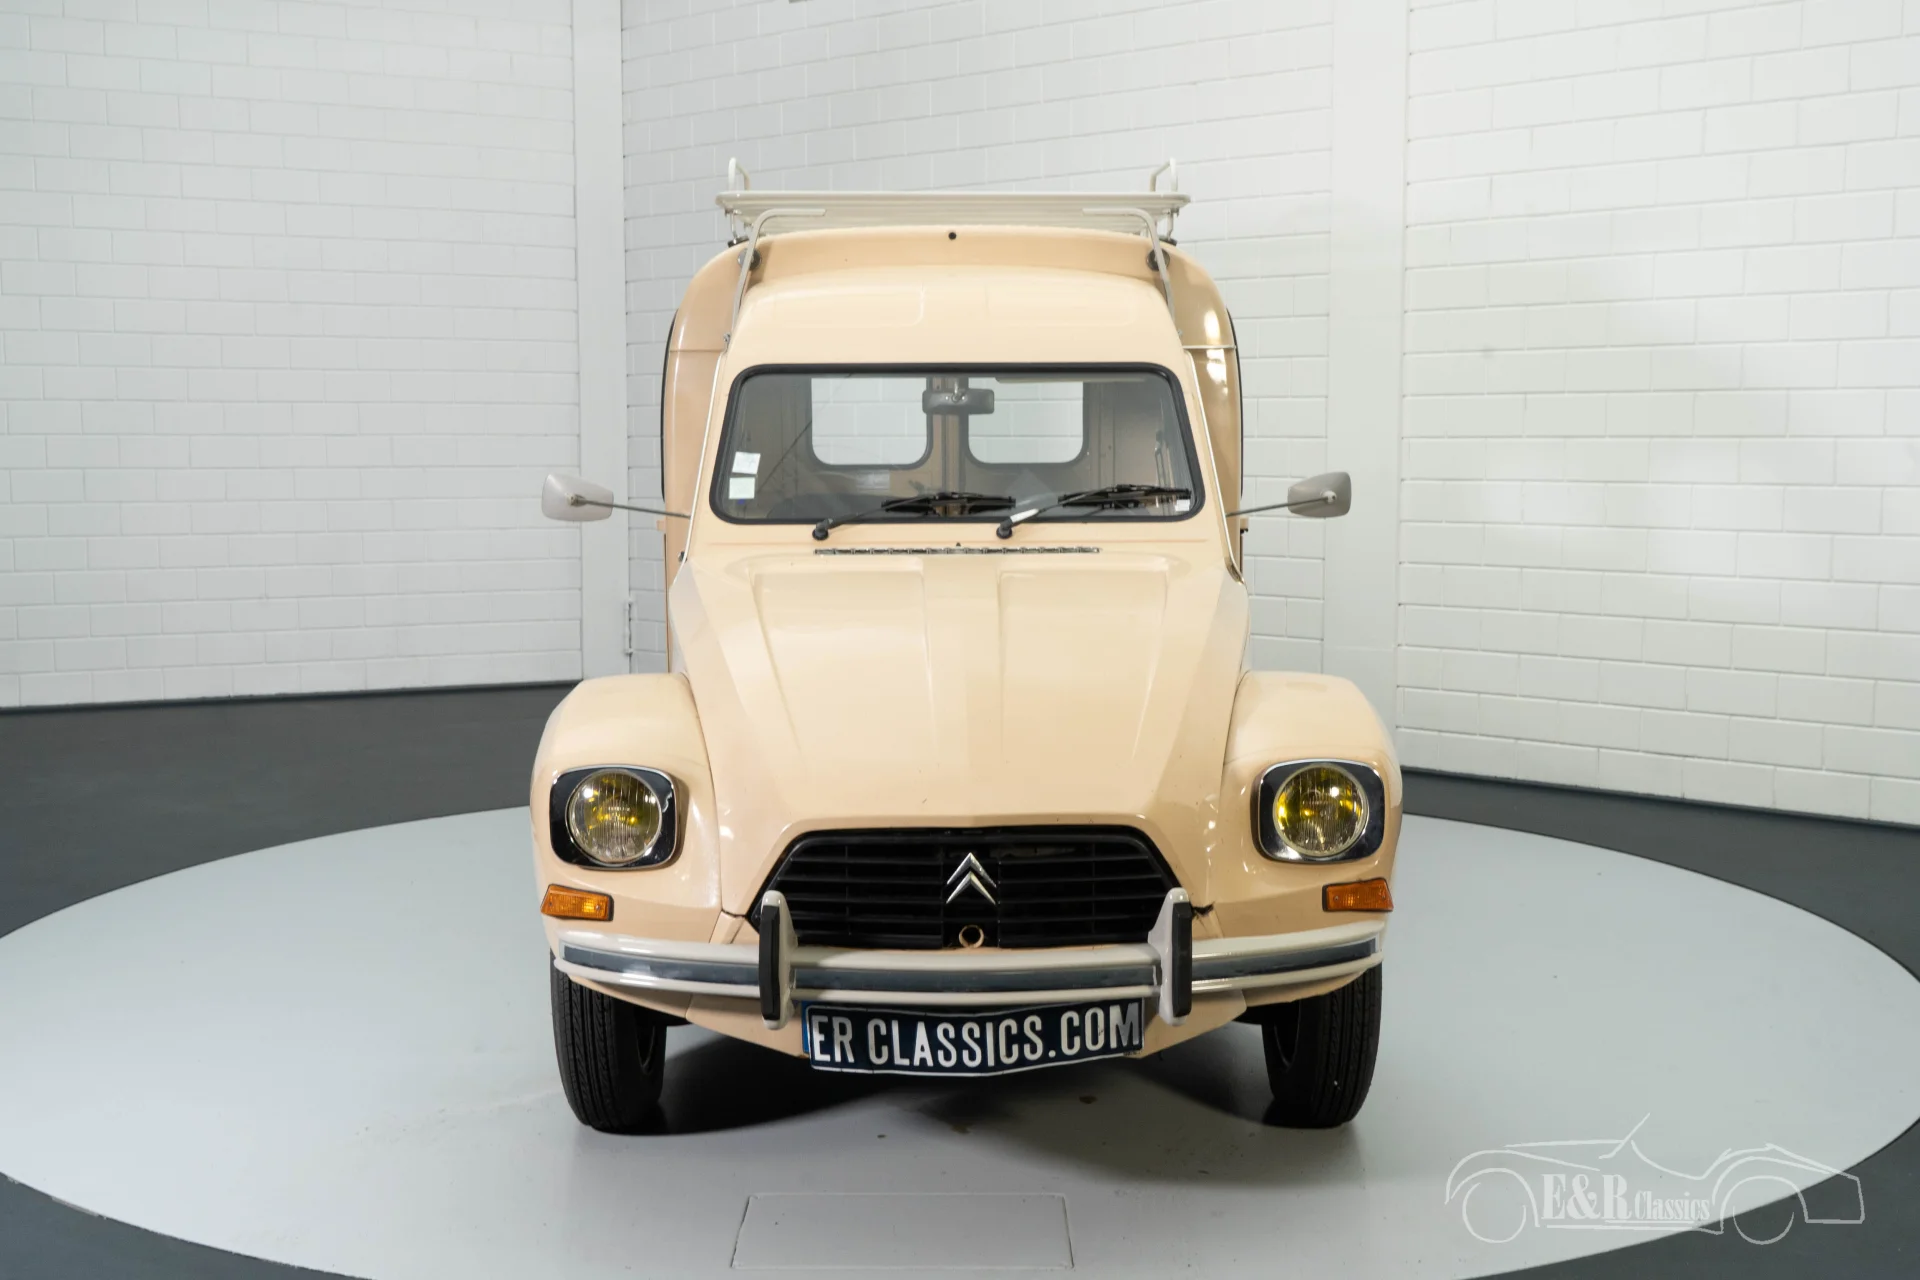 Citroën 2CV for sale at ERclassics